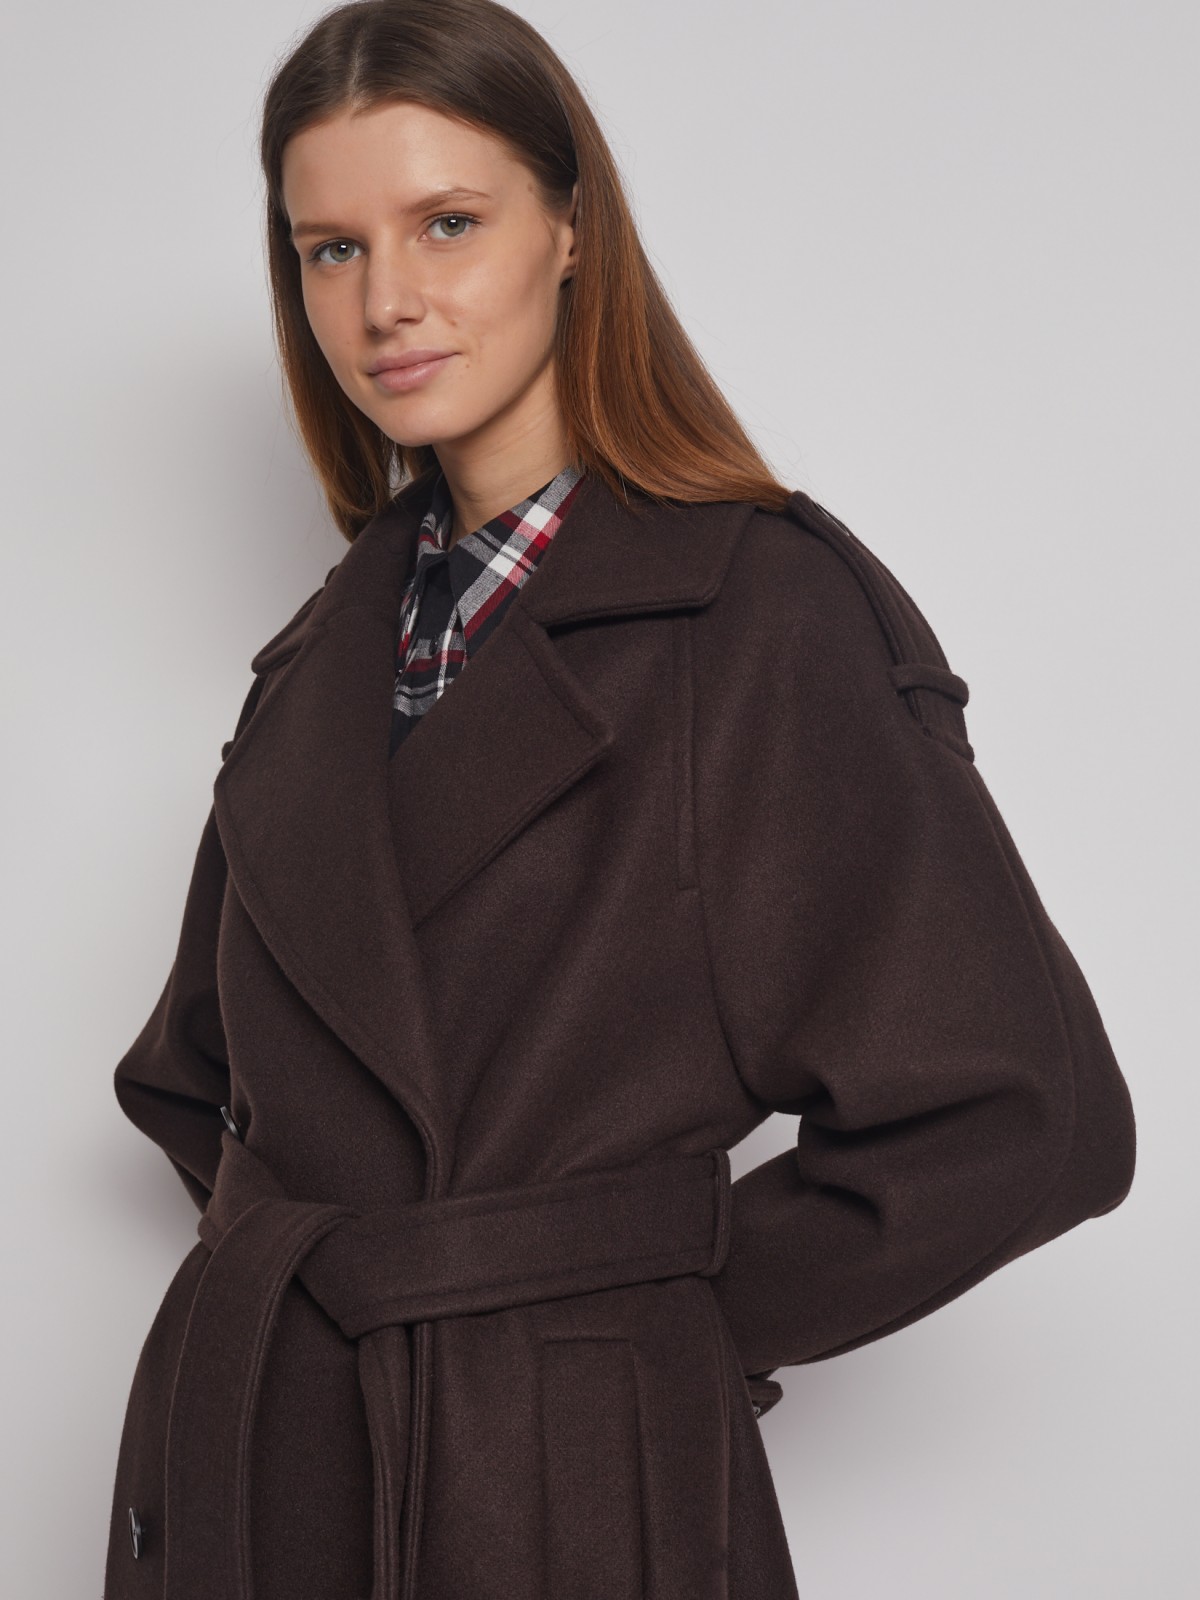 Двубортное пальто-тренч с поясом zolla 02312580Y044, цвет коричневый, размер XS - фото 3